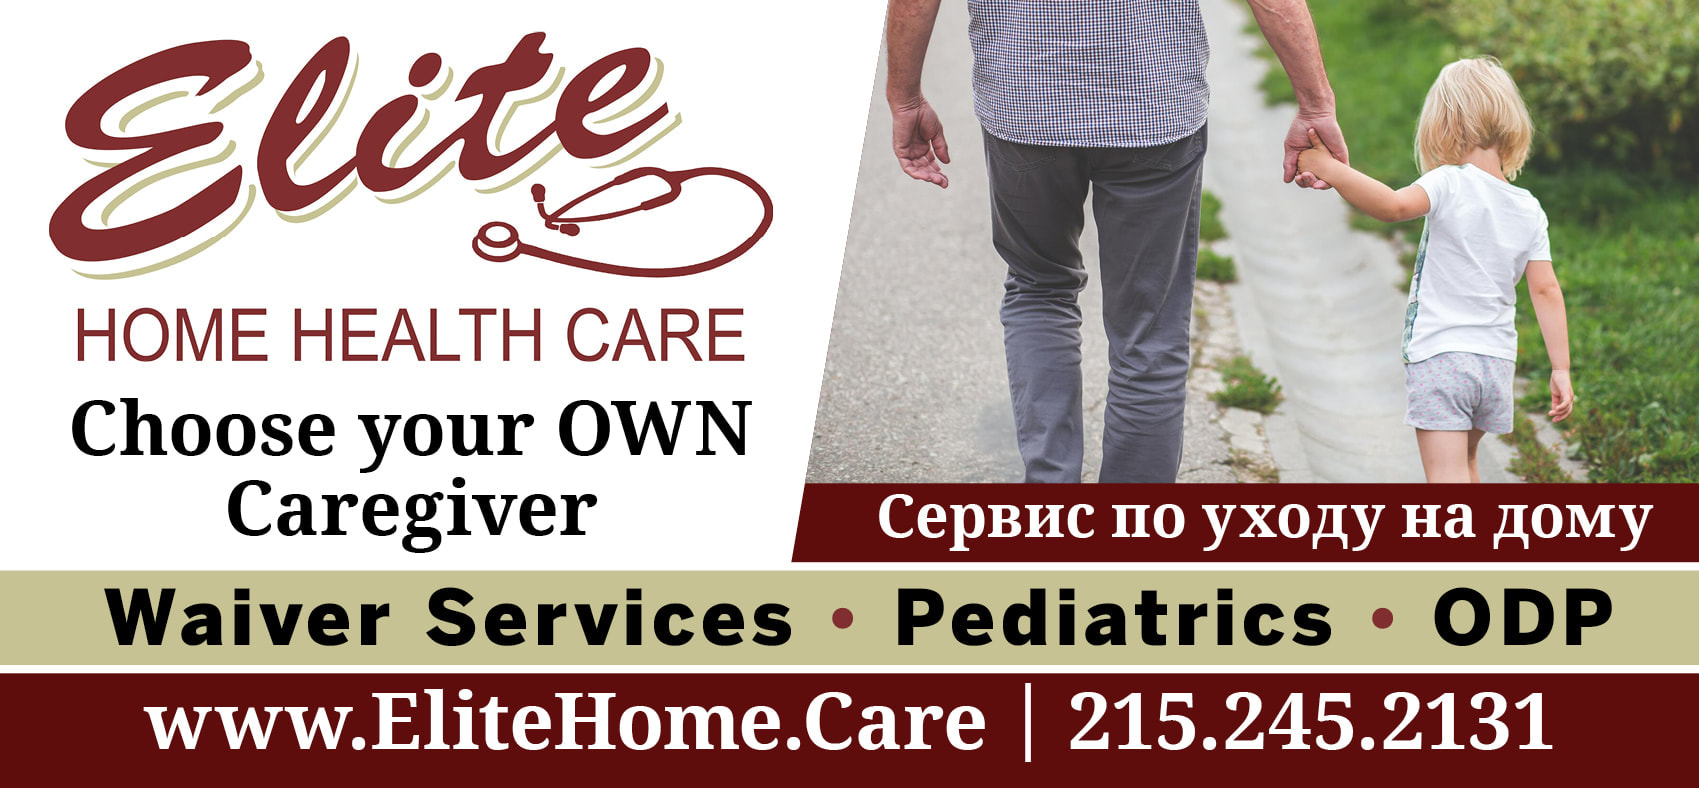 Elite Home Health Care - Elite Home Health Care Philadelphia